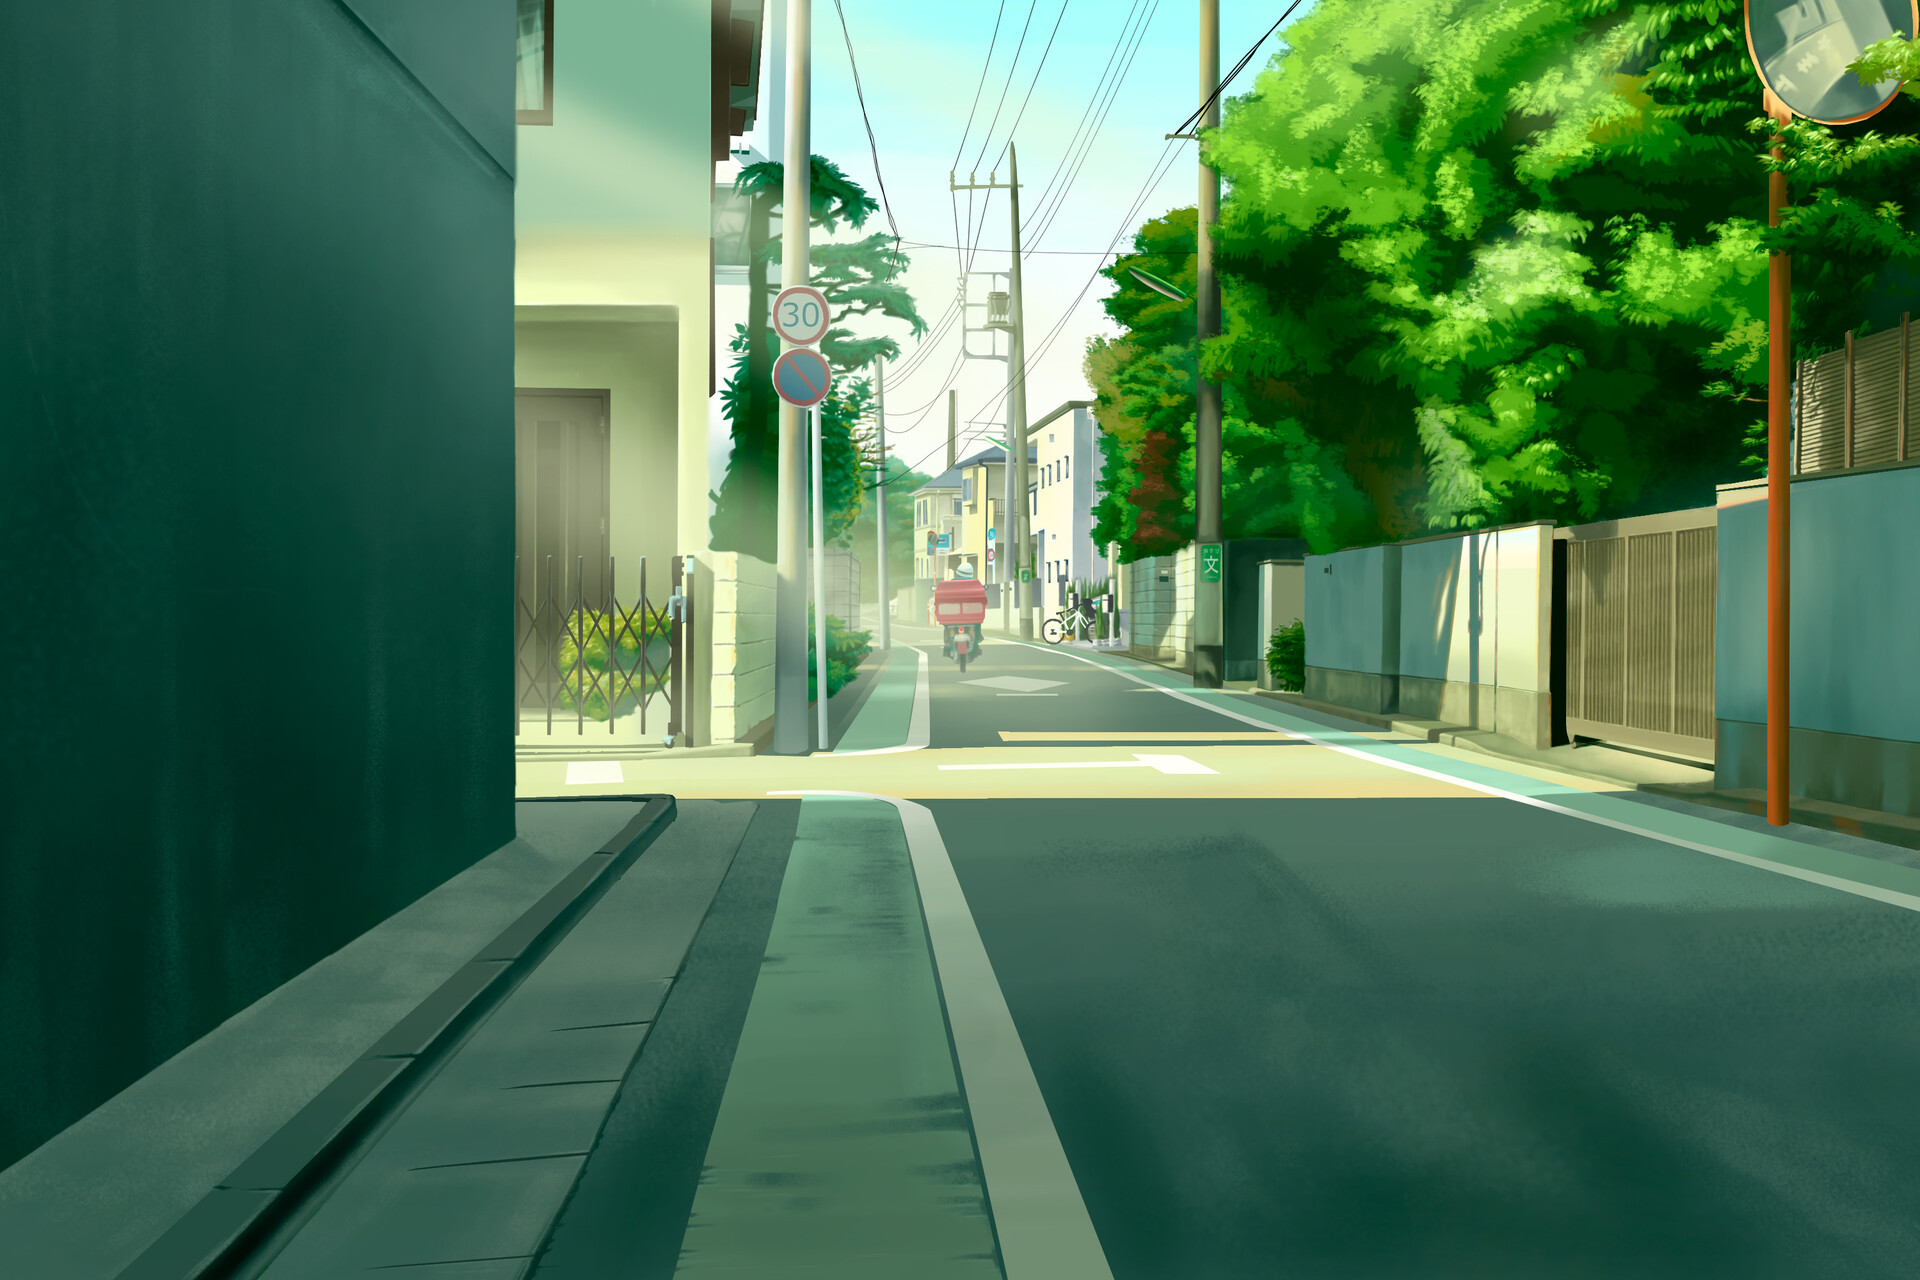 ArtStation - Street of Japan (Animation style)